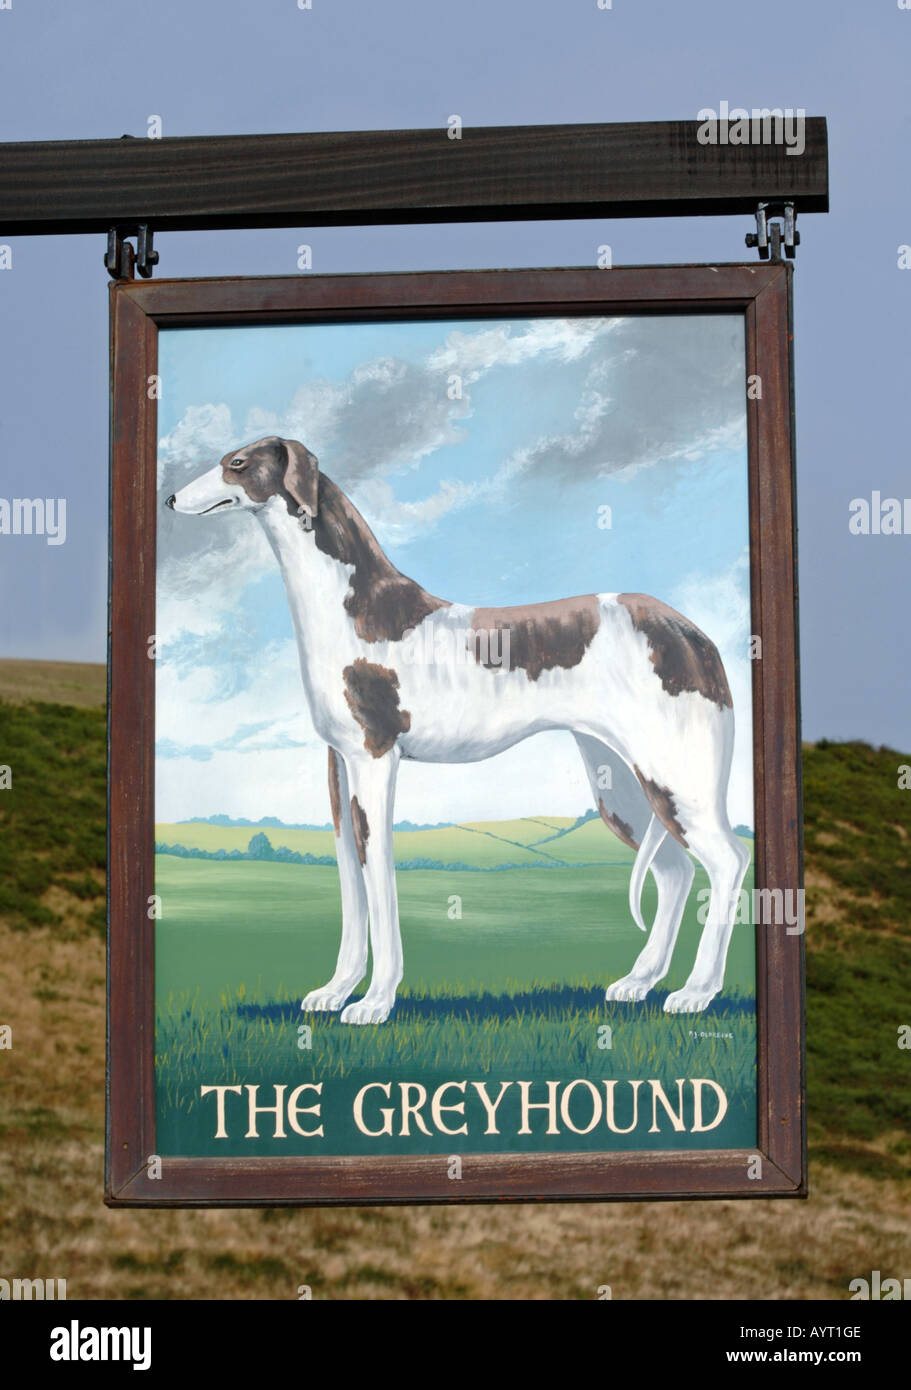 Der Greyhound Pub Schild Stockfoto